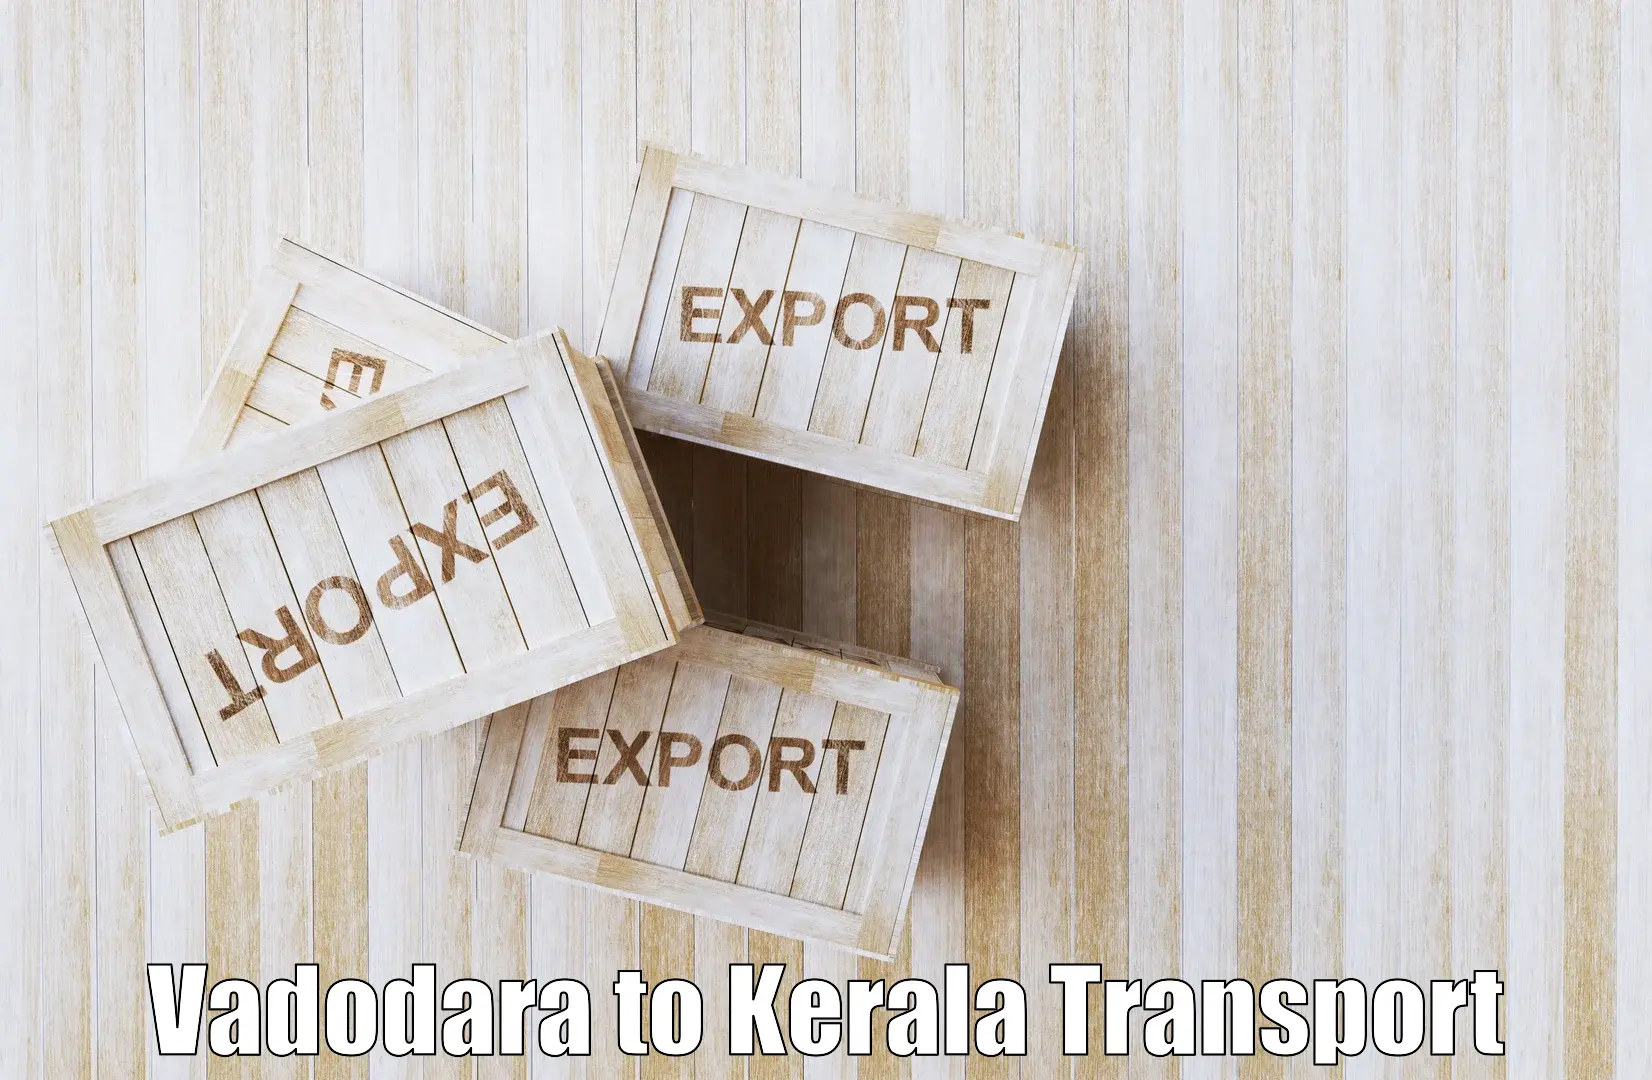 Transport in sharing Vadodara to Cochin Port Kochi